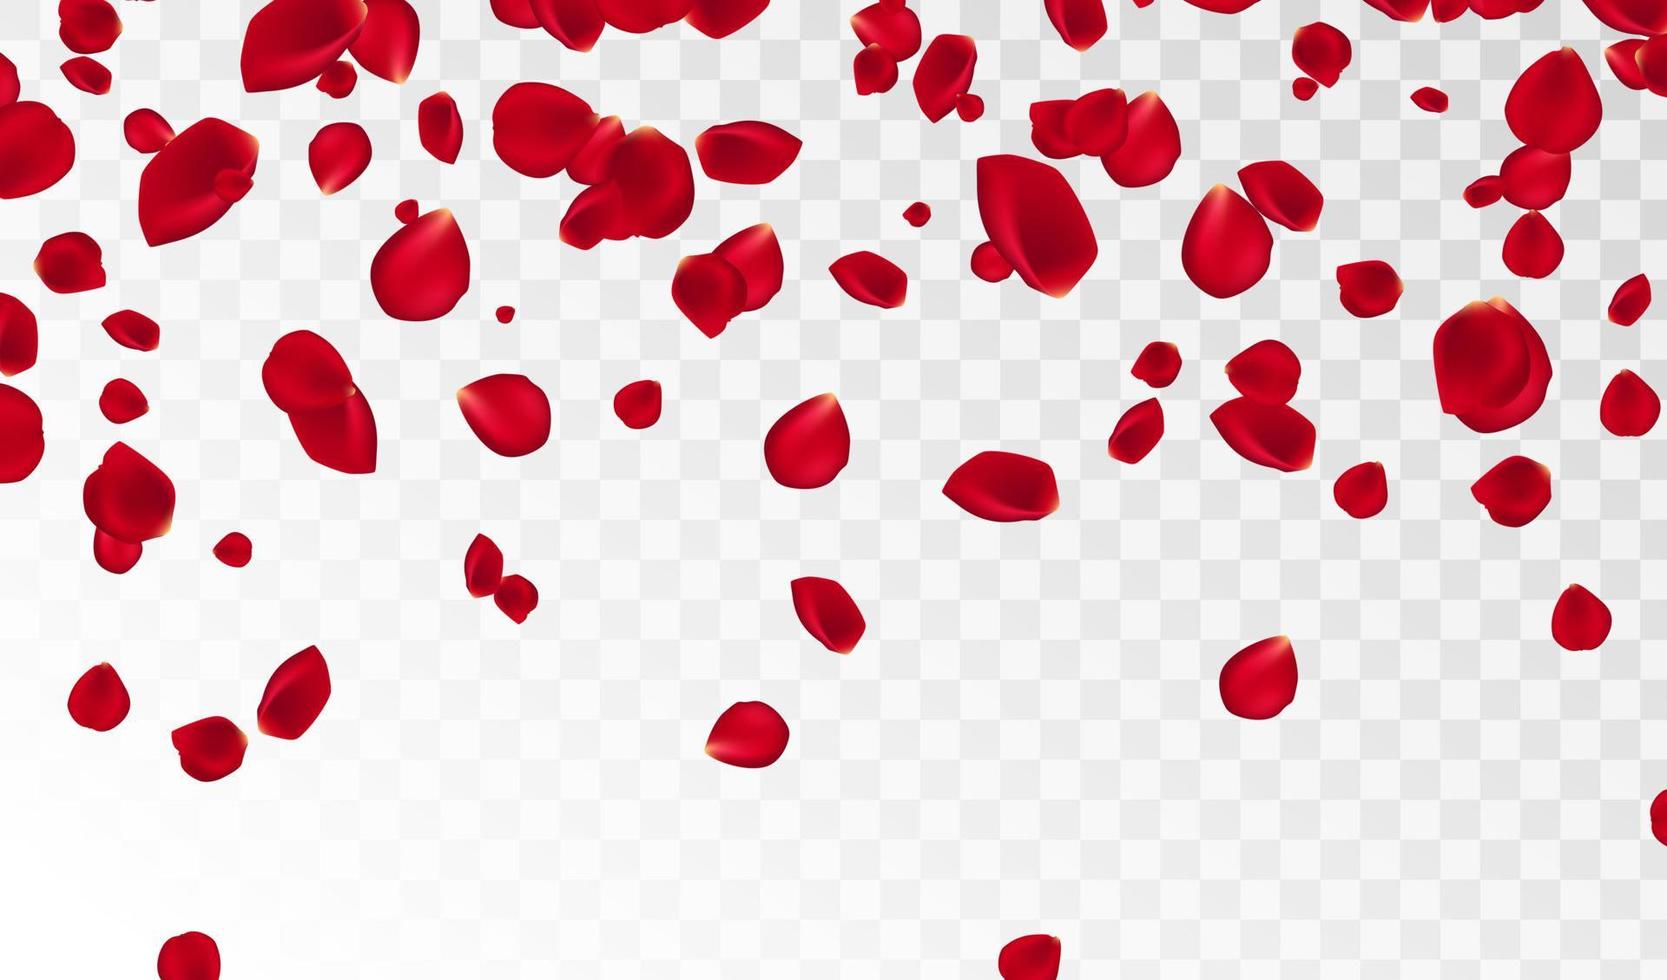 abstrato com pétalas de rosa vermelhas a voar sobre um fundo branco transparente. ilustração vetorial. EPS 10. ilustração vetorial de pétalas de rosa vetor